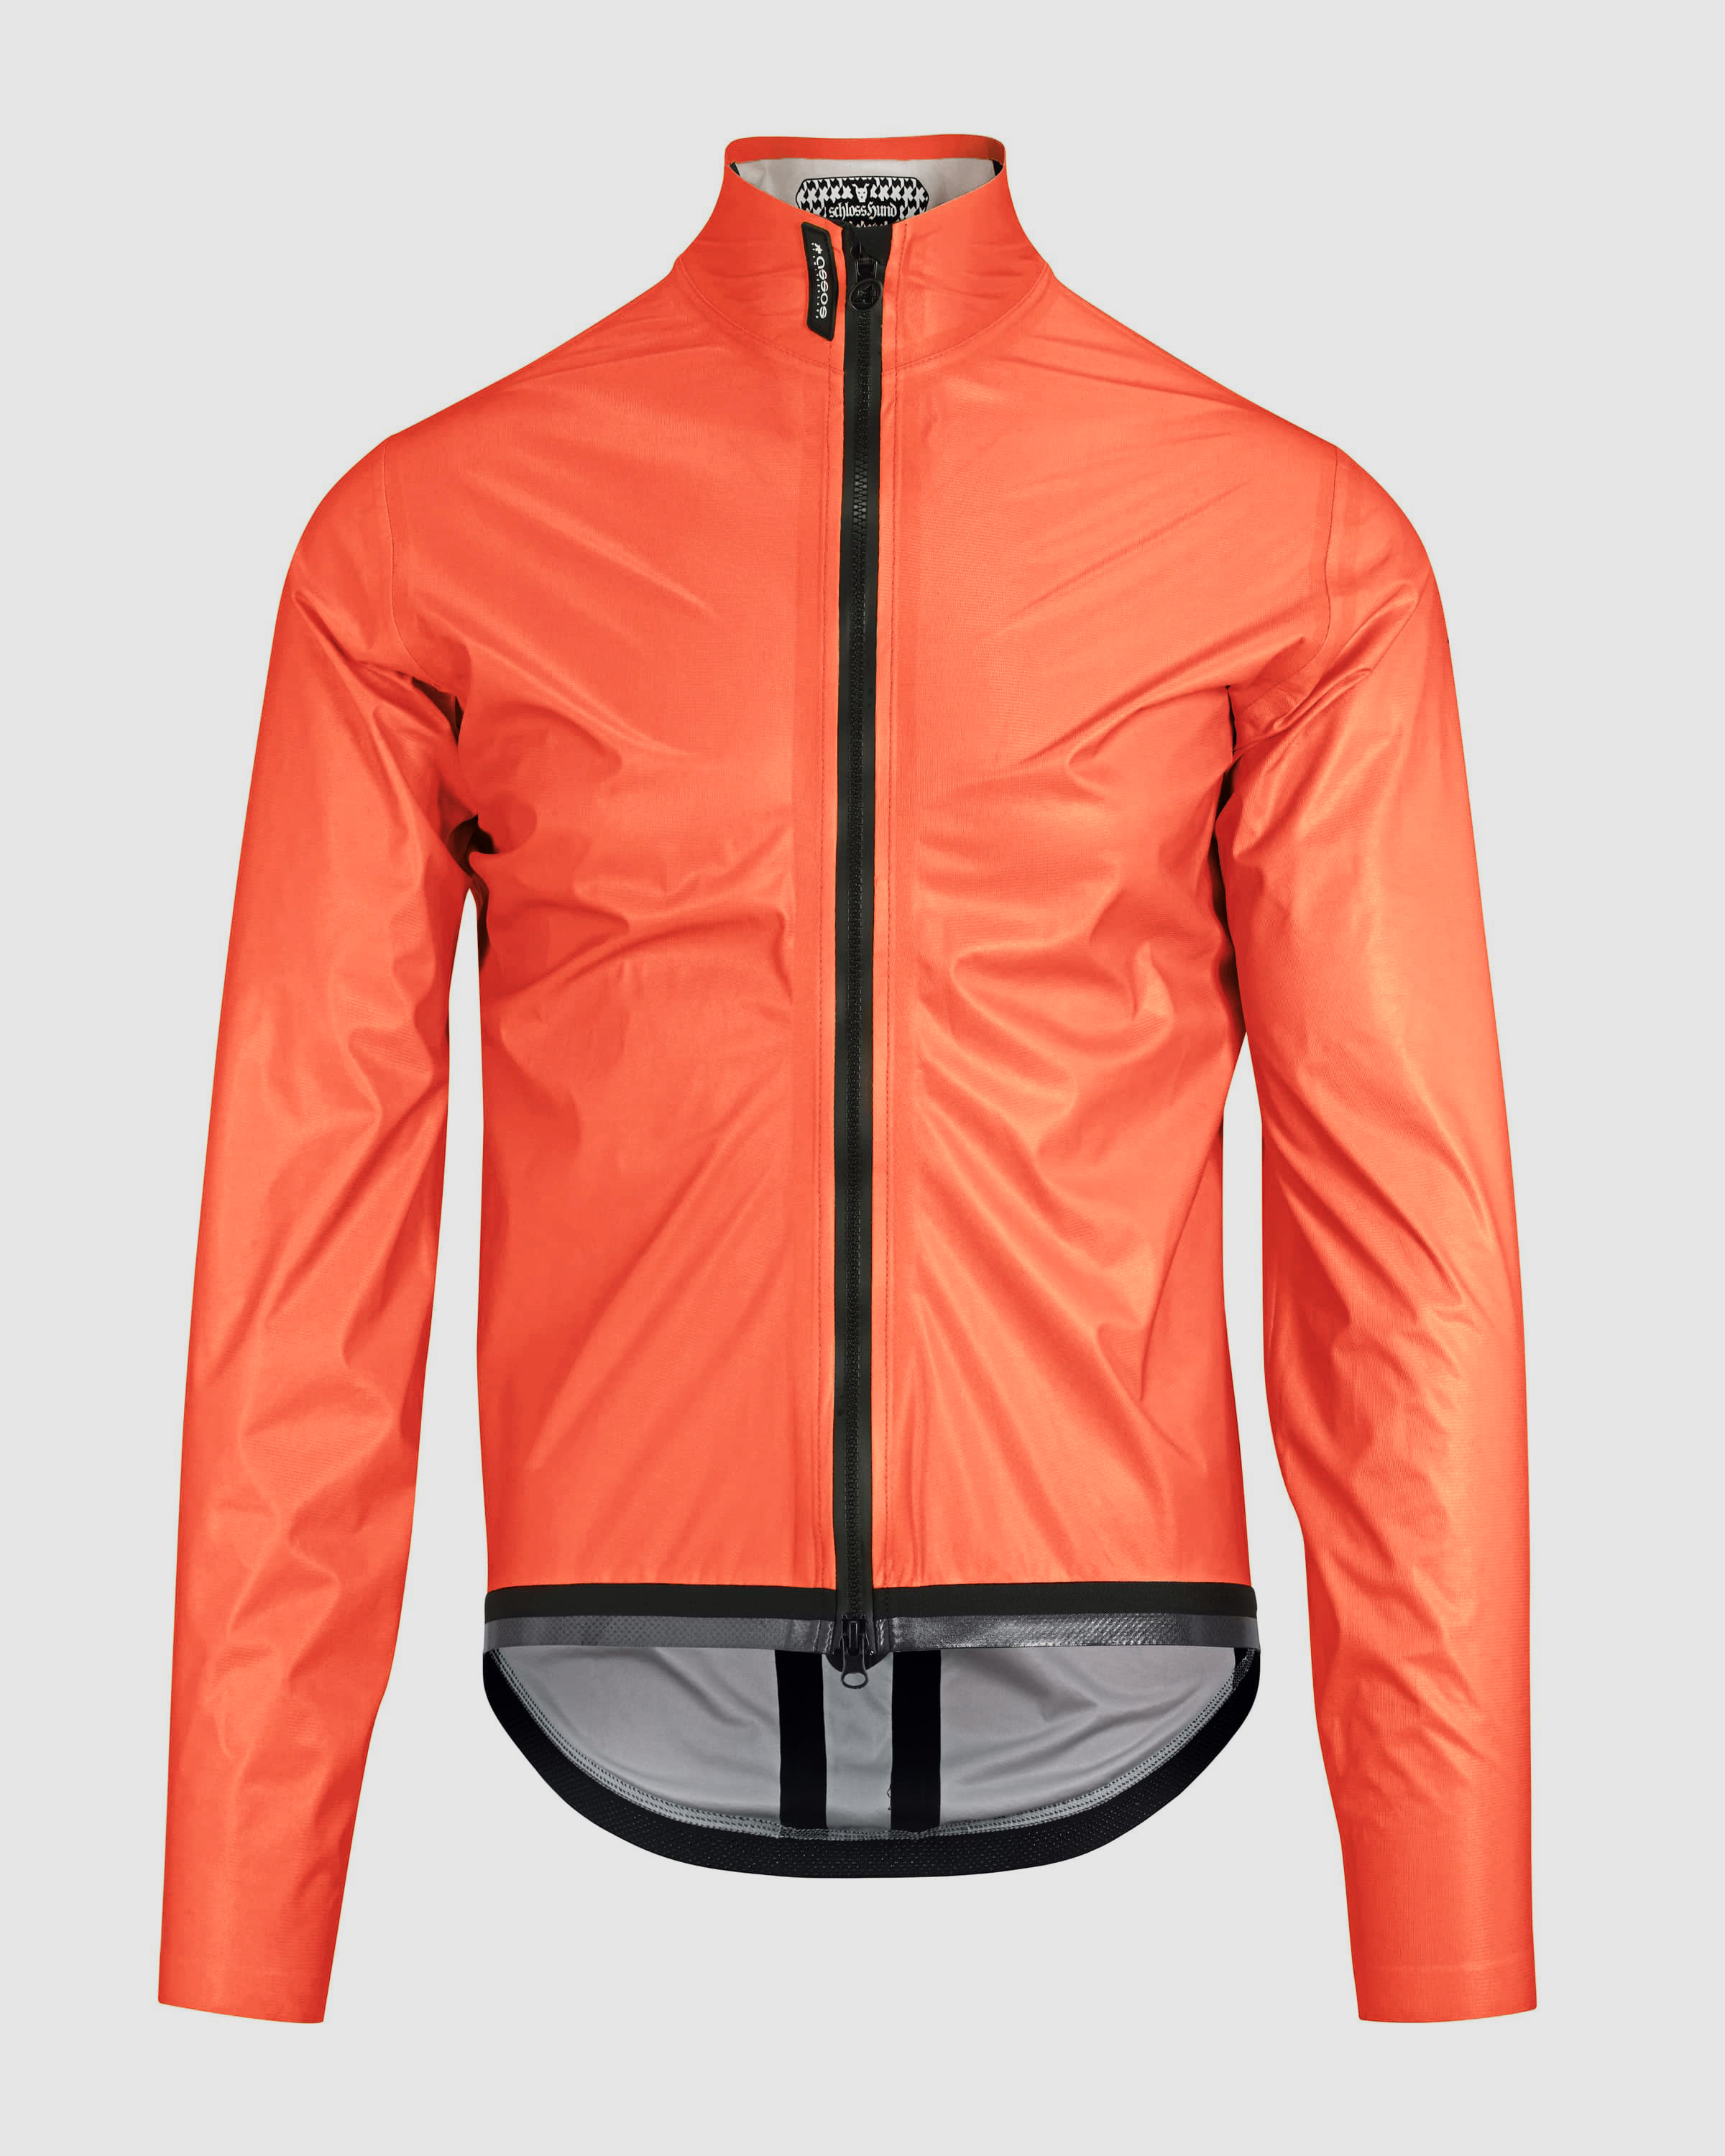 assos waterproof cycling jacket